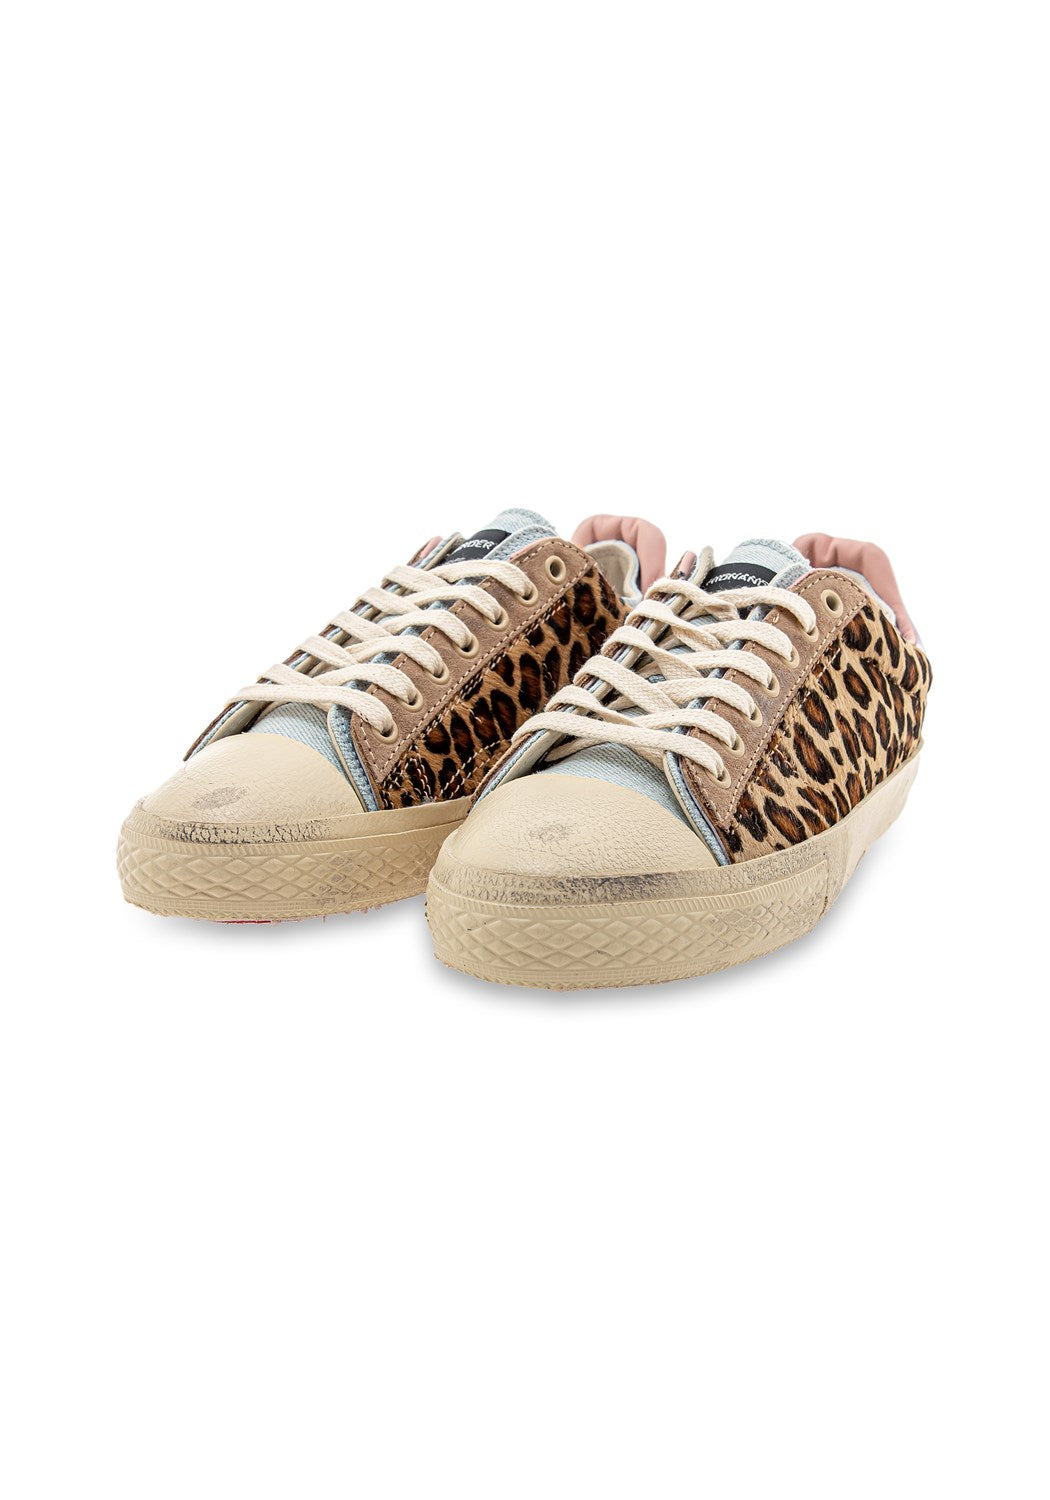 STARLESS LOW W Sneaker leopard/denim | Bildmaterial bereitgestellt von SHOES.PLEASE.